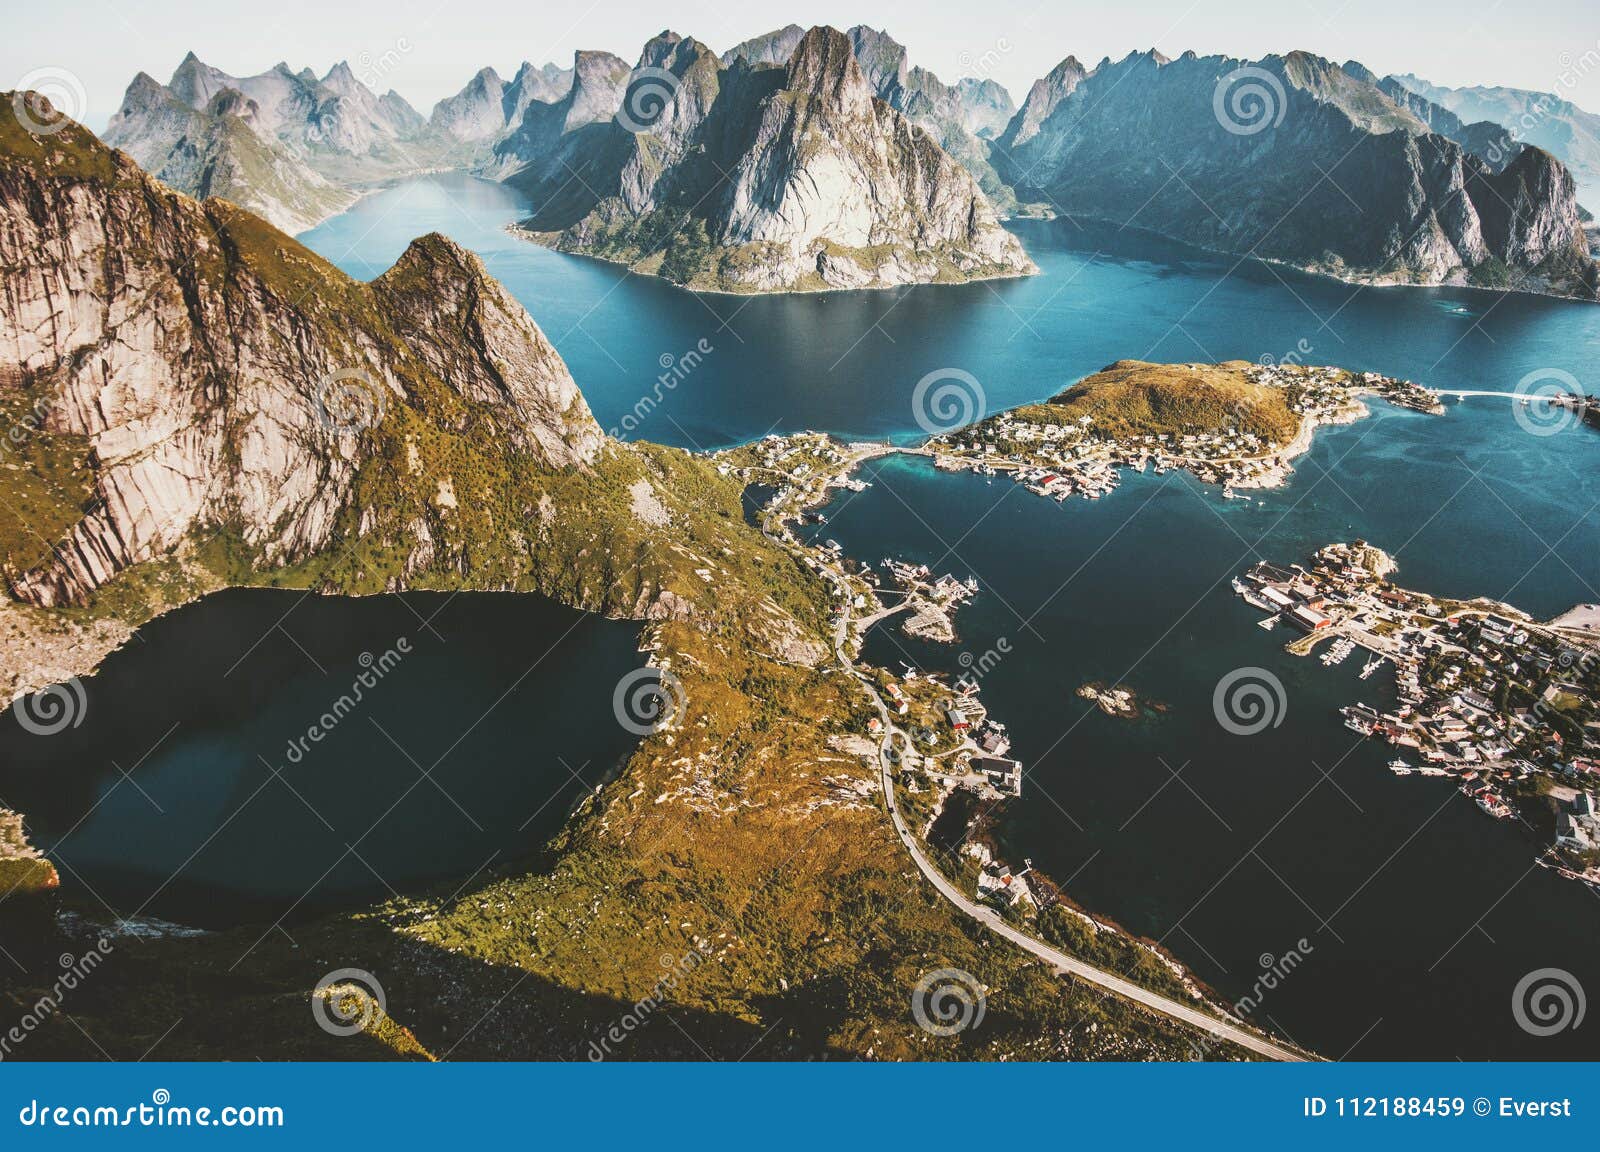 reinebringen mountain aerial view landscape